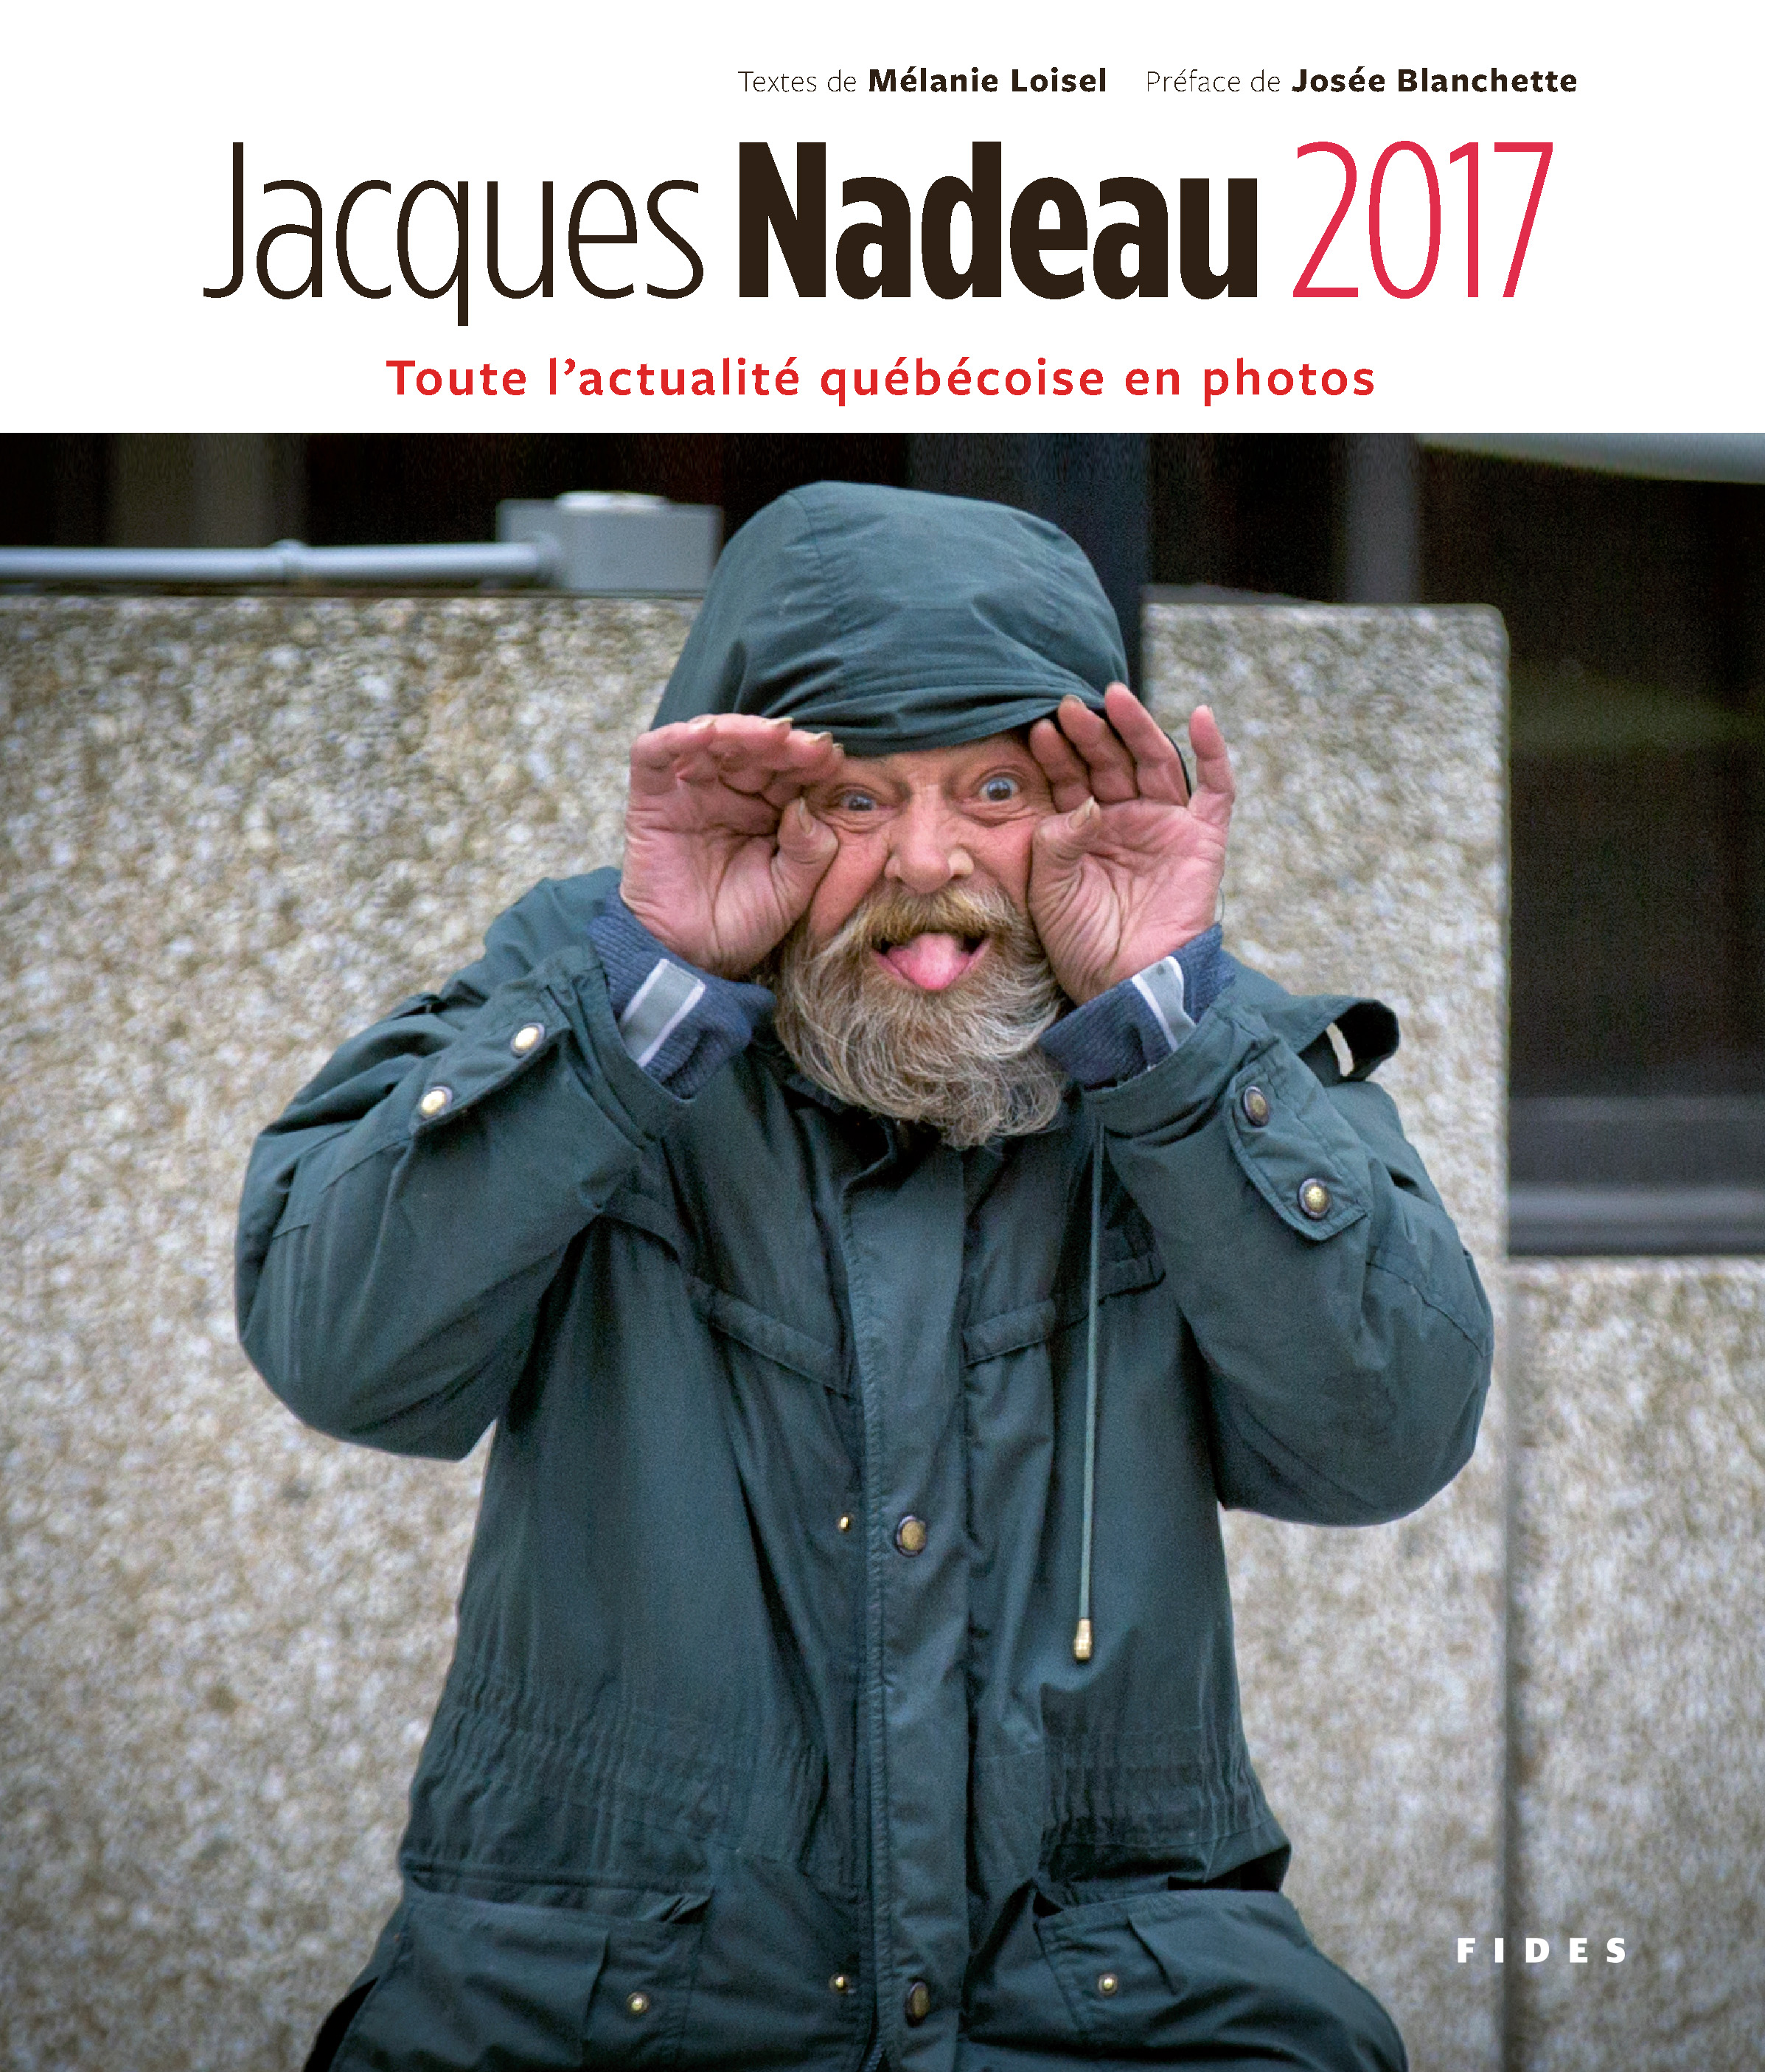 alt="Jacques-nadeau"